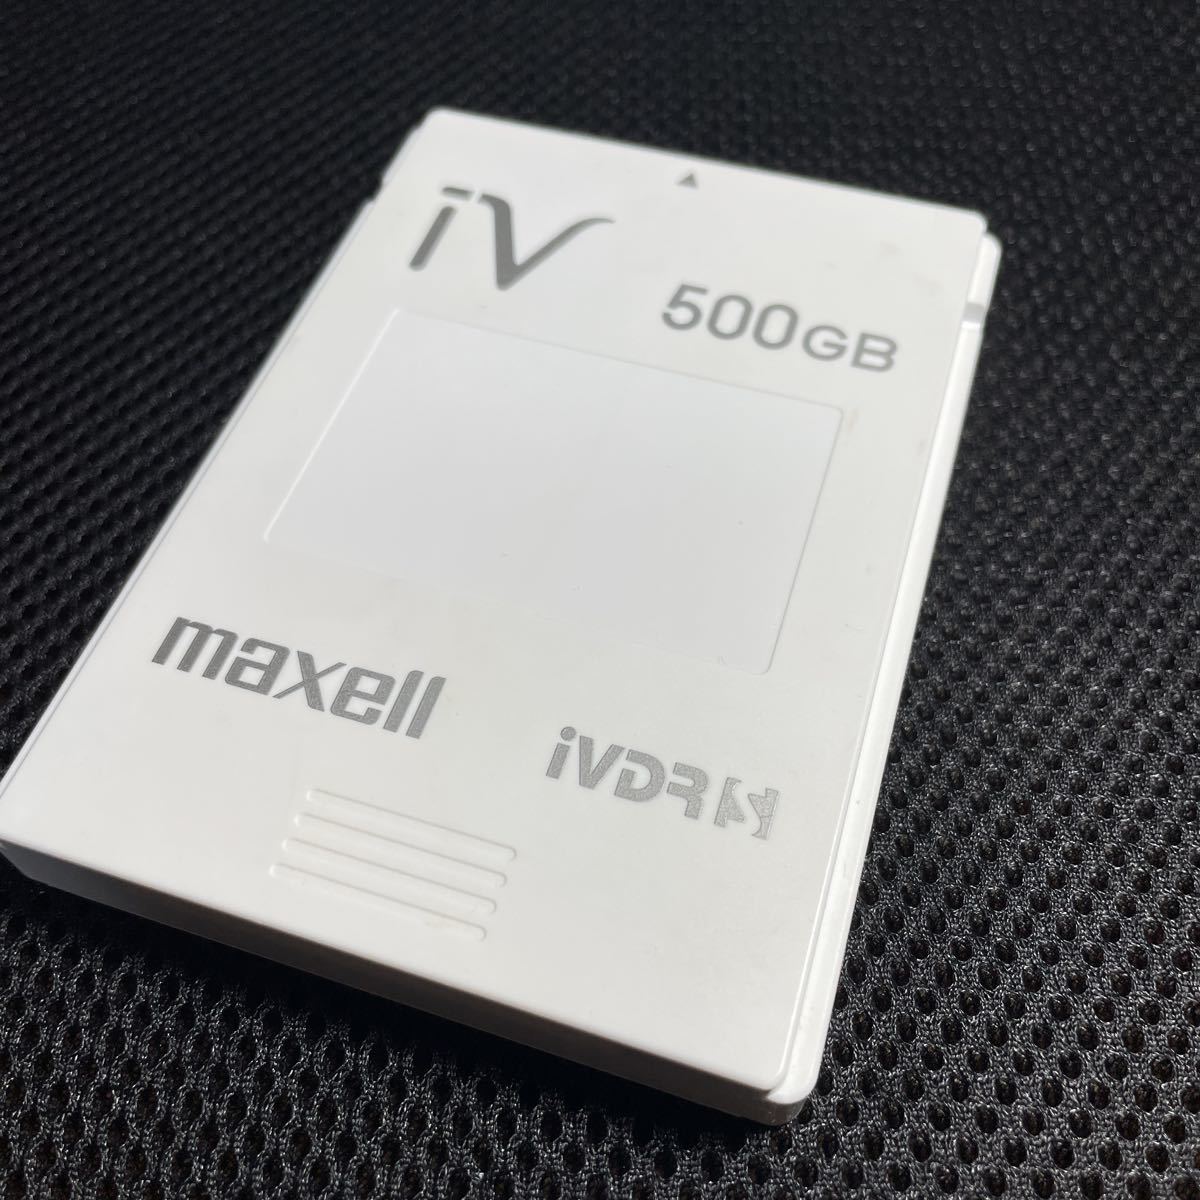 【2E11】⑨マクセル maxell　カセットハードディスク■M-VDRS1T.E アイヴィ iVDR-S 500GB ジャンク扱いカセットHDD_画像1